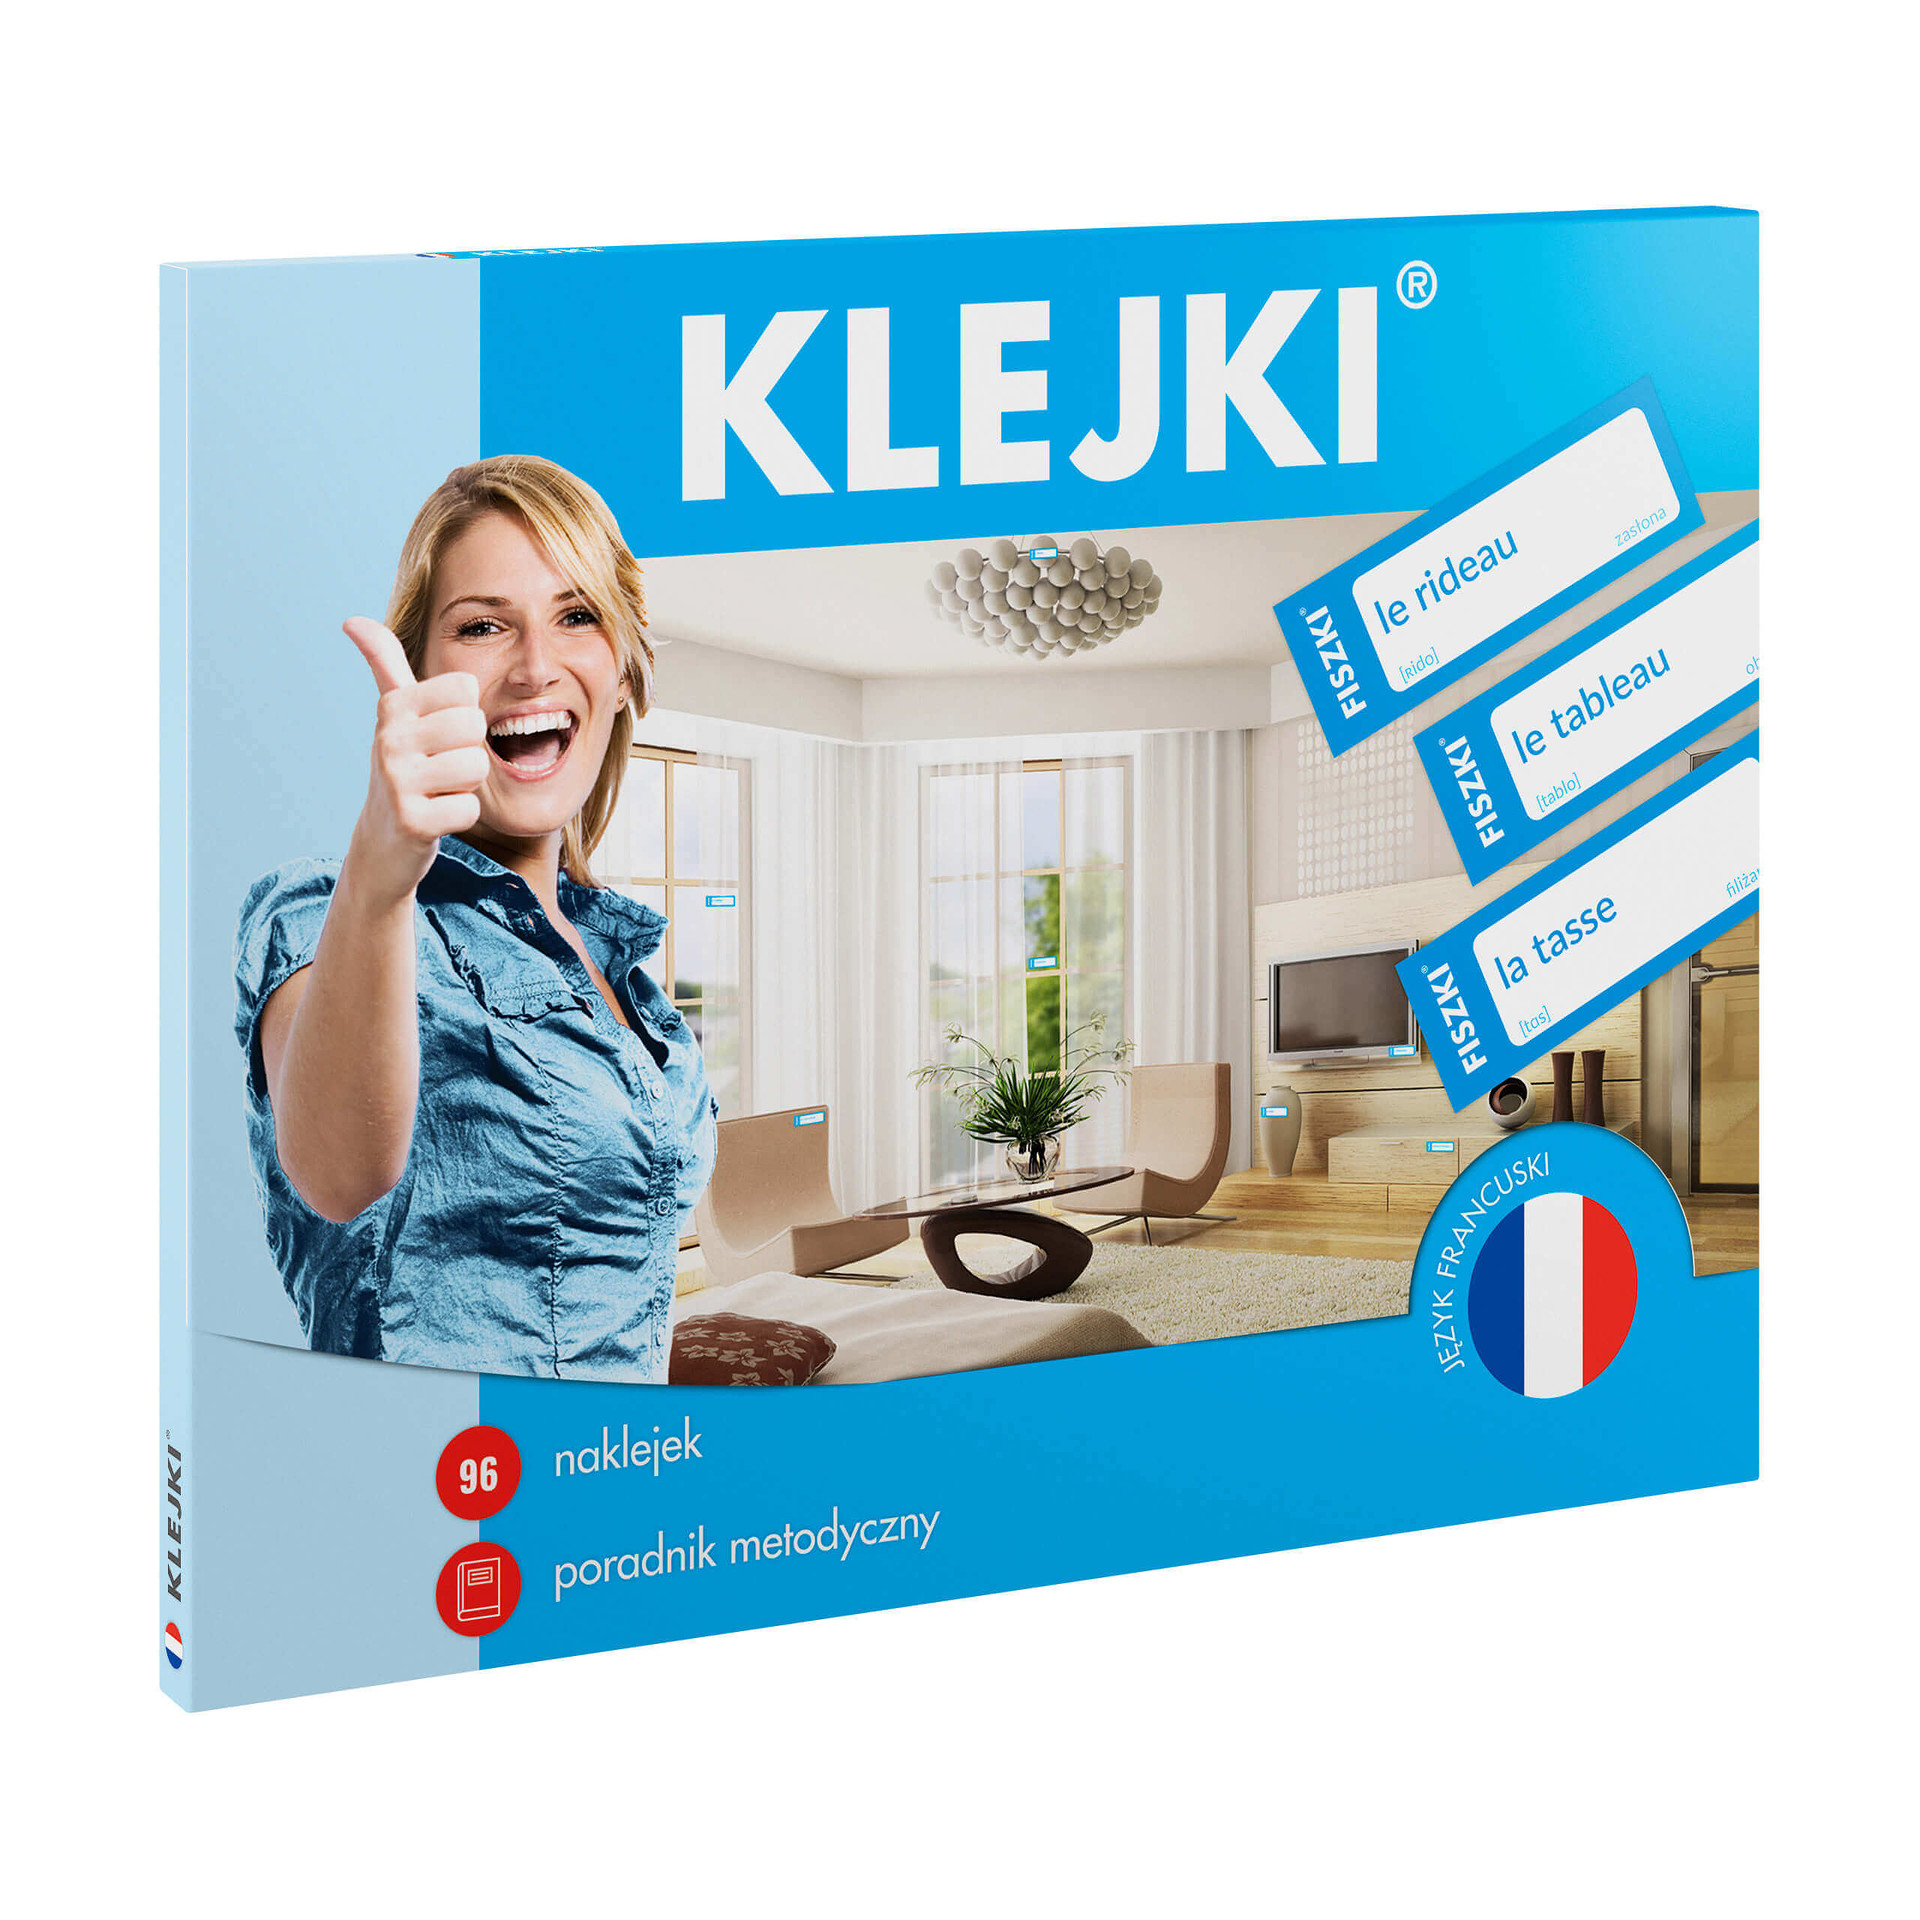 KLEJKI - język francuski - naklejki edukacyjne do nauki języka